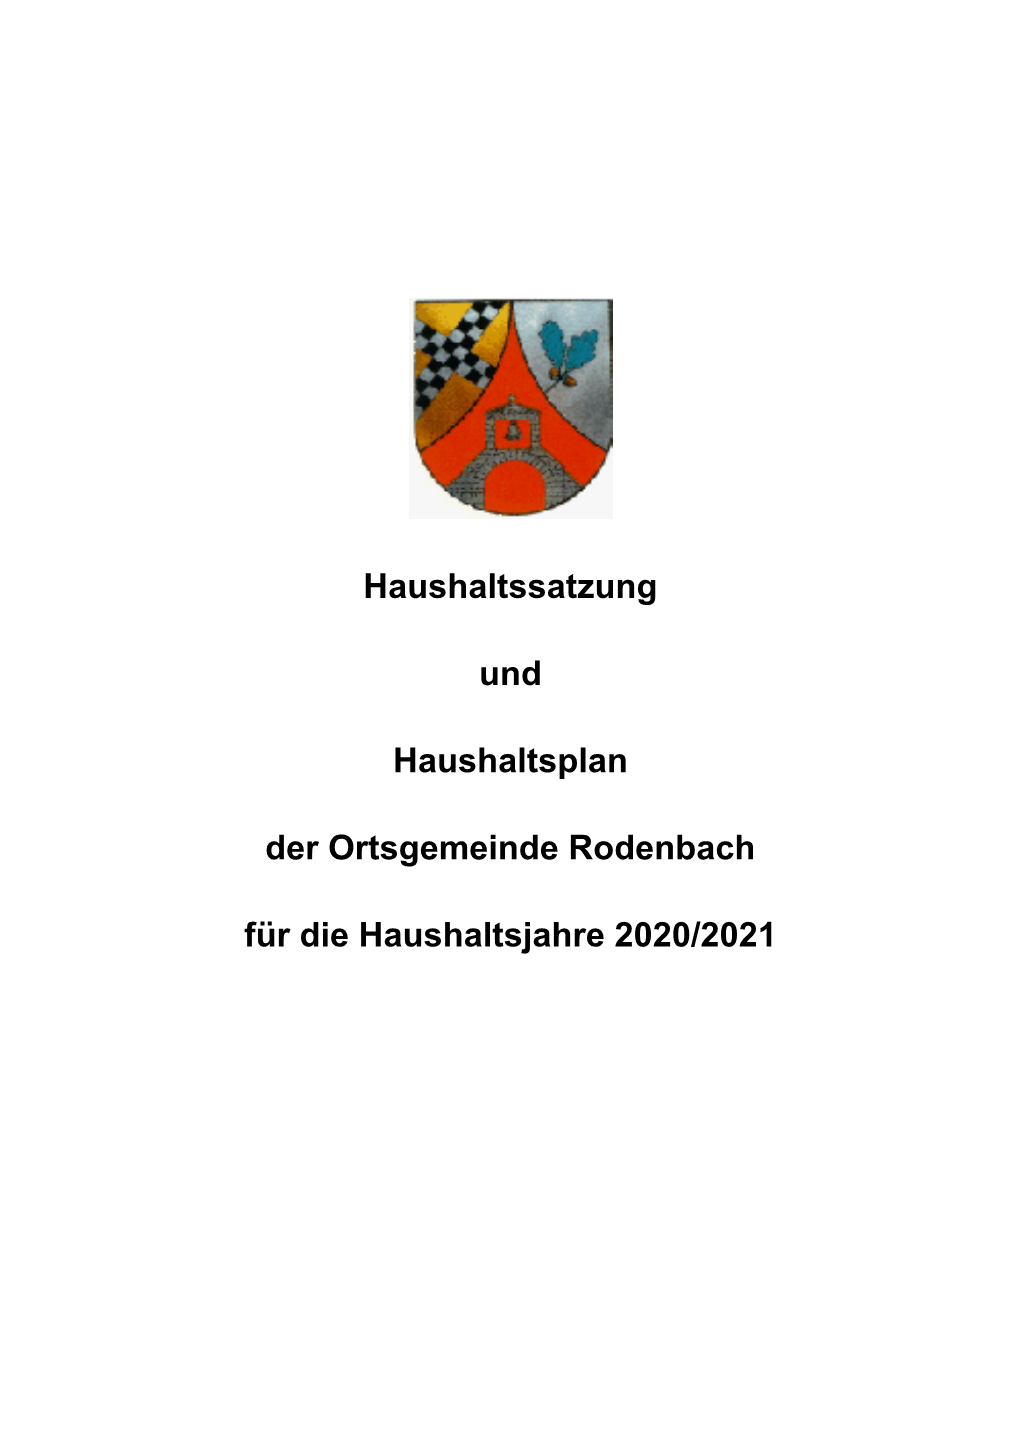 Für Die Haushaltsjahre 2020/2021 Haushaltssatzung Und Haushaltsplan Der Ortsgemeinde Rodenbach